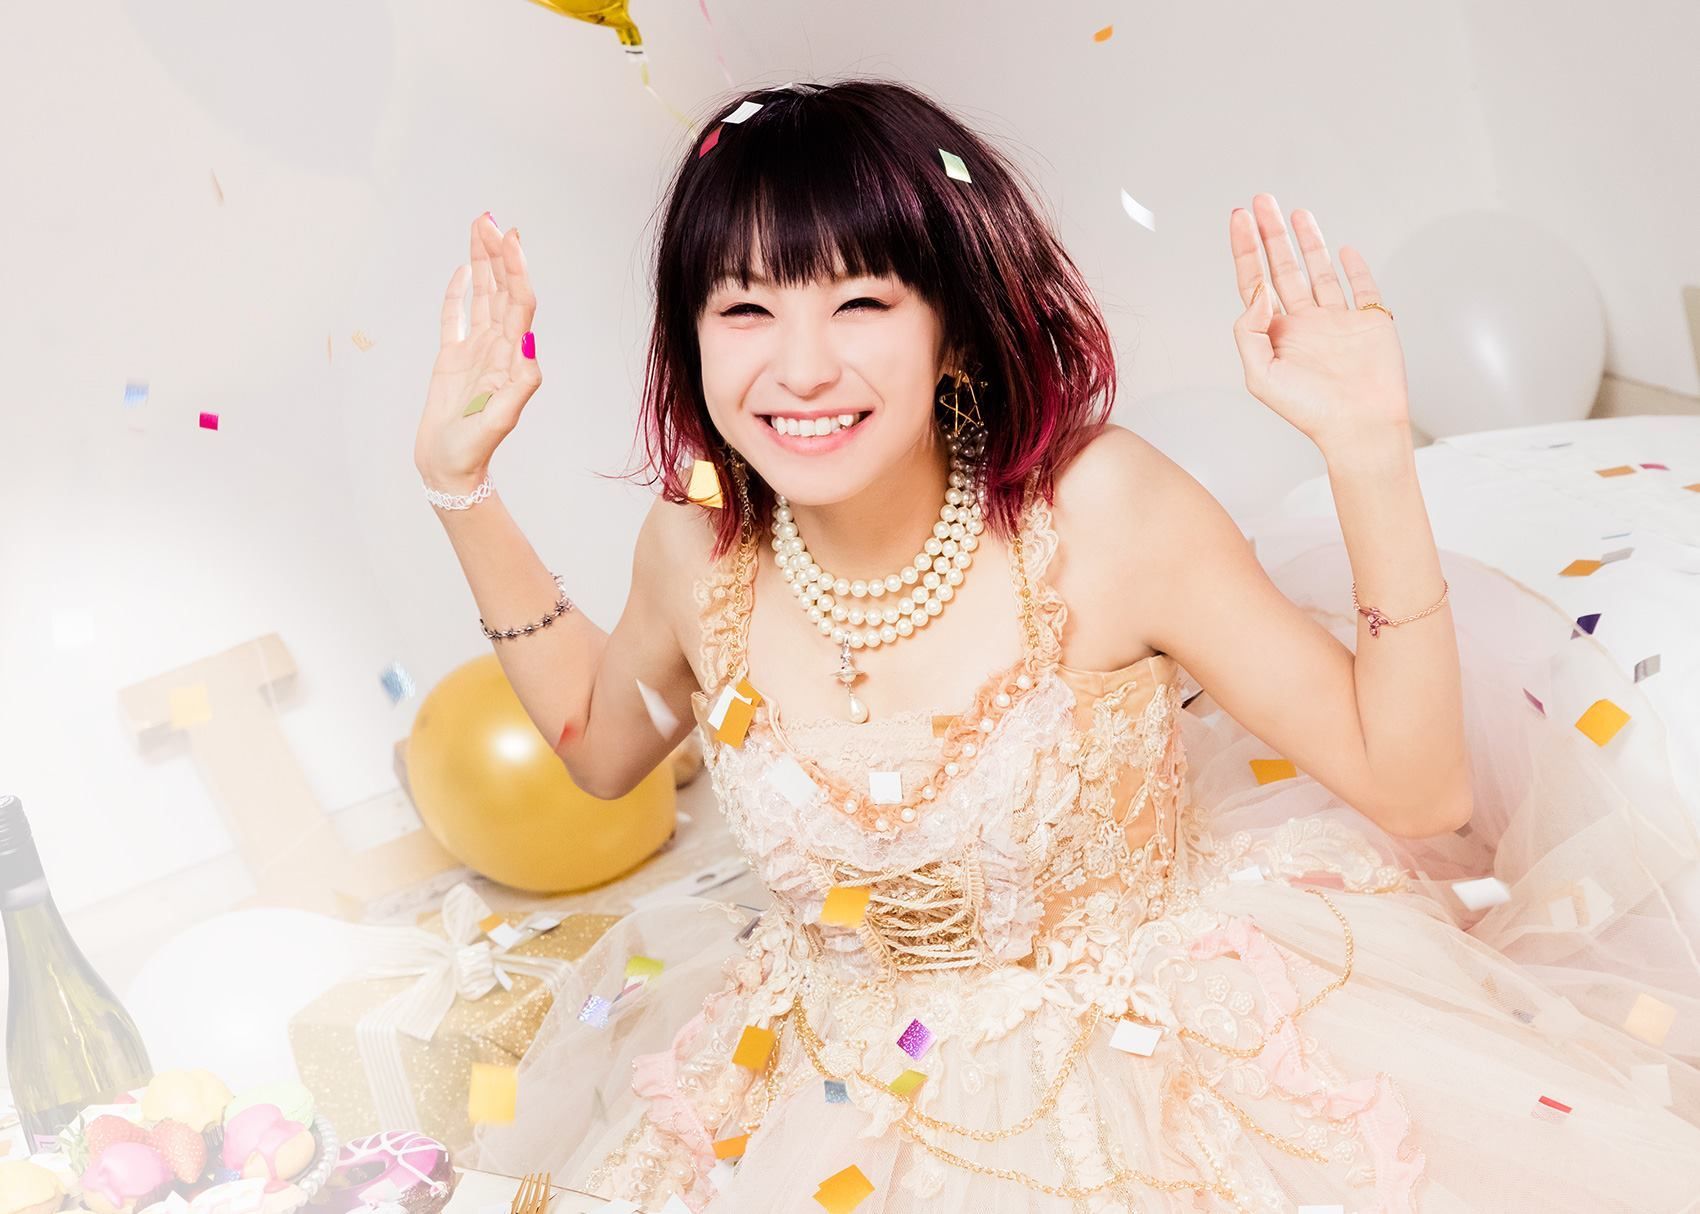 Best Oribe Risa image. Lisa, Singer, Lisa japanese singer